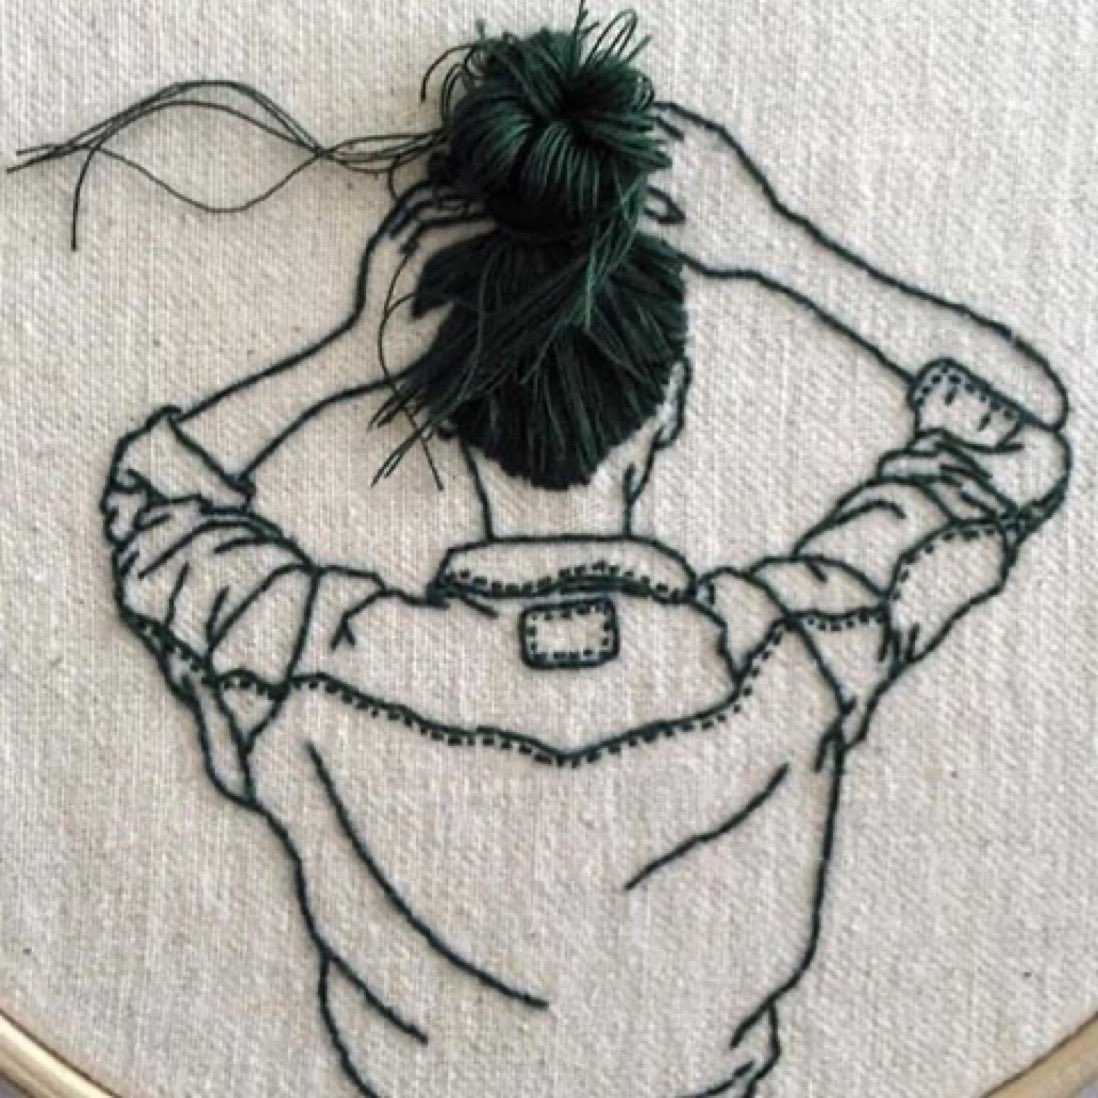 Embroidered Art 

#EmbroideredArt #StitchCraft #FiberArt #HandEmbroidery #EmbroideryHoops
#NeedleWork #StitchersOfInstagram #CraftsOfInstagram #ThreadArt #ModernEmbroidery
#EmbroideryLove #ArtisanCrafts #DIYCrafts #EmbroideryInstaguild #StitchWitchery
#CraftyFingers…